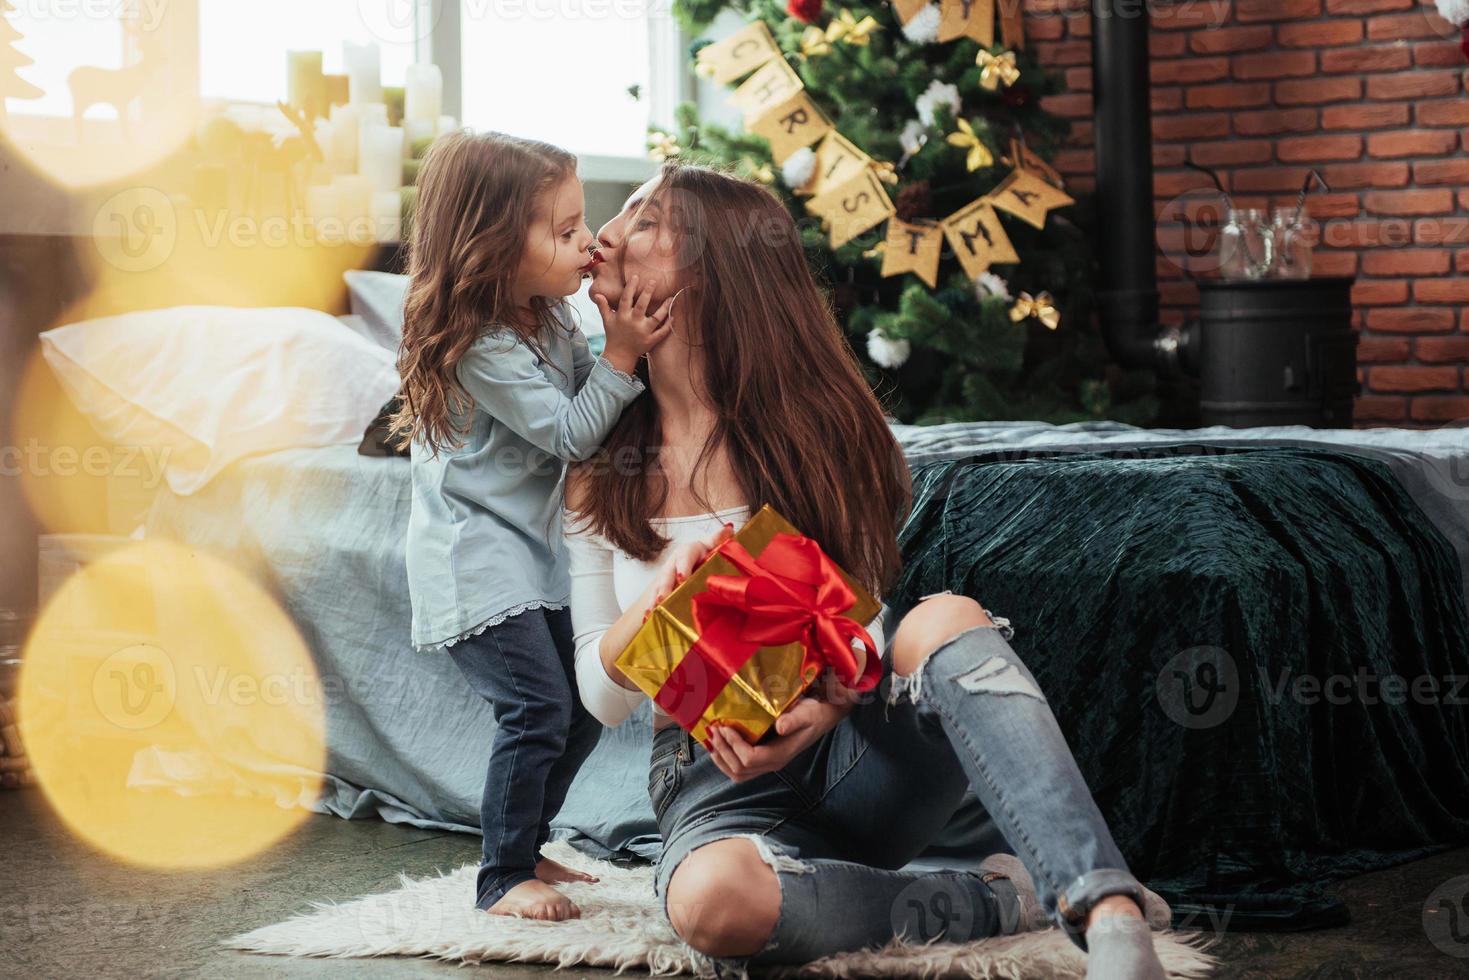 jolie scène de baiser. la mère et la fille sont assises dans une chambre décorée de vacances et tiennent une boîte-cadeau photo